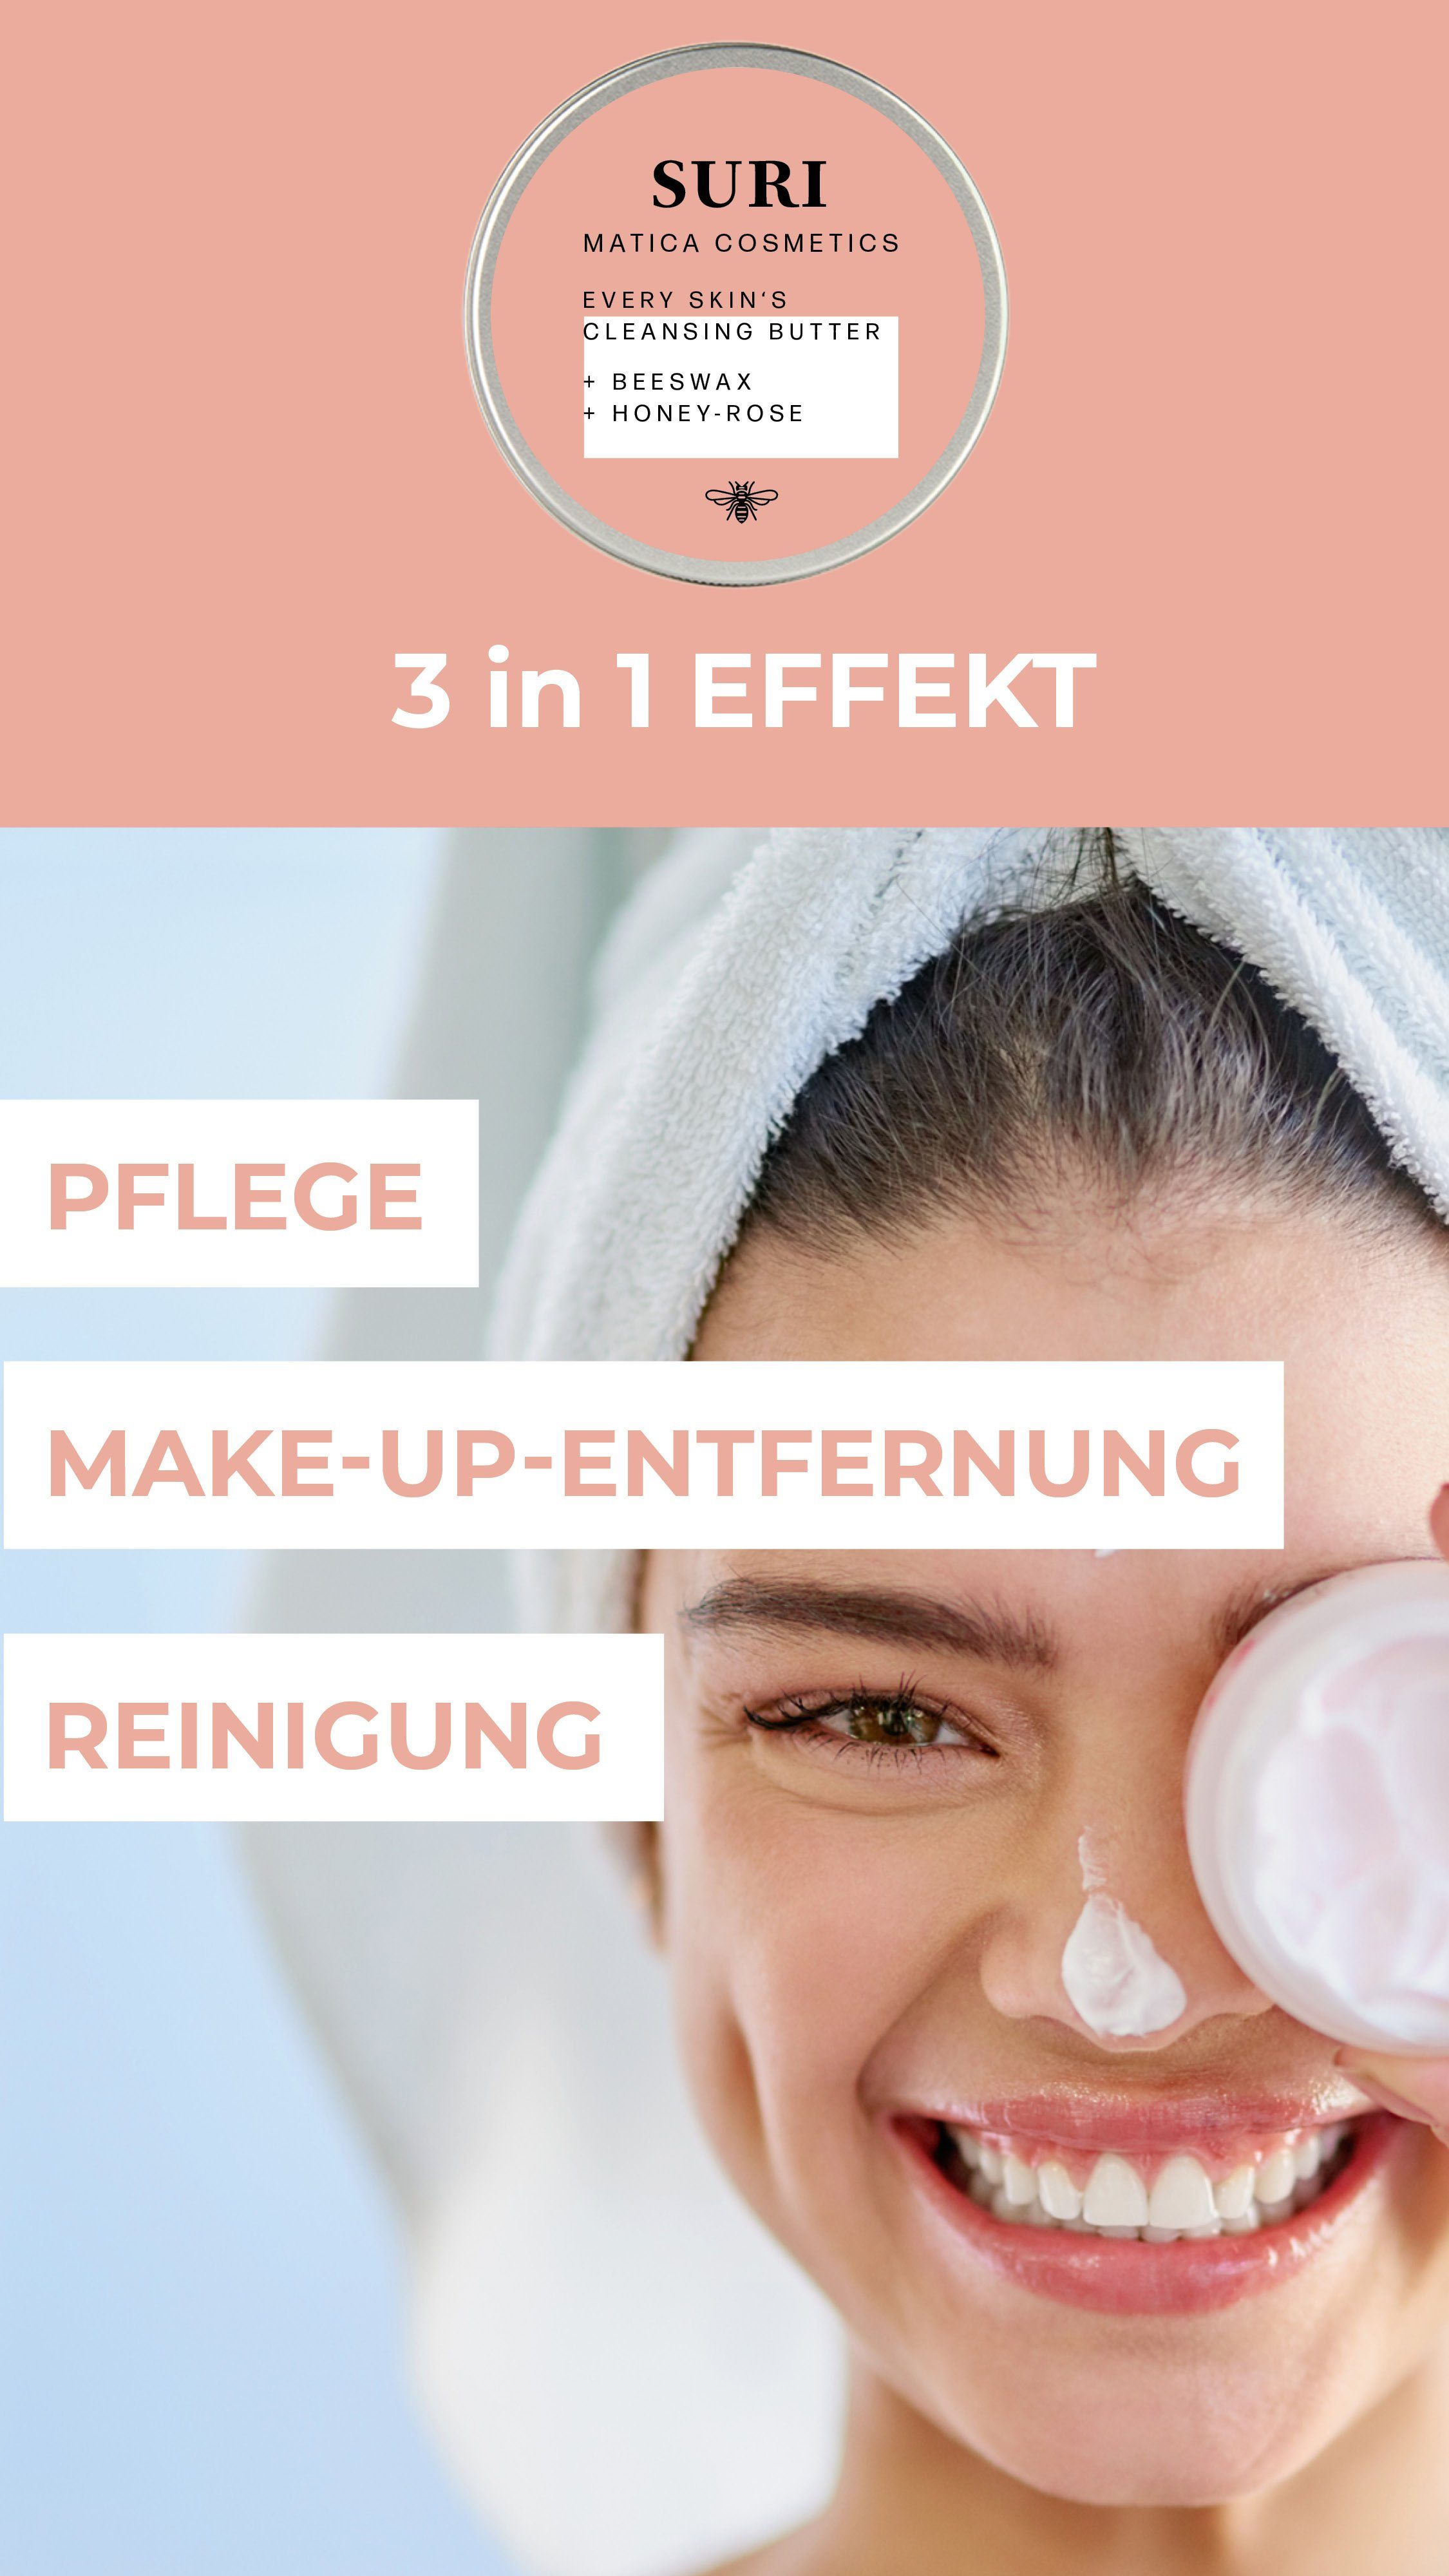 Damen Gesichtspflege Matica Cosmetics Gesichts-Reinigungscreme Suri Honig-Rose ; Cleansing Butter